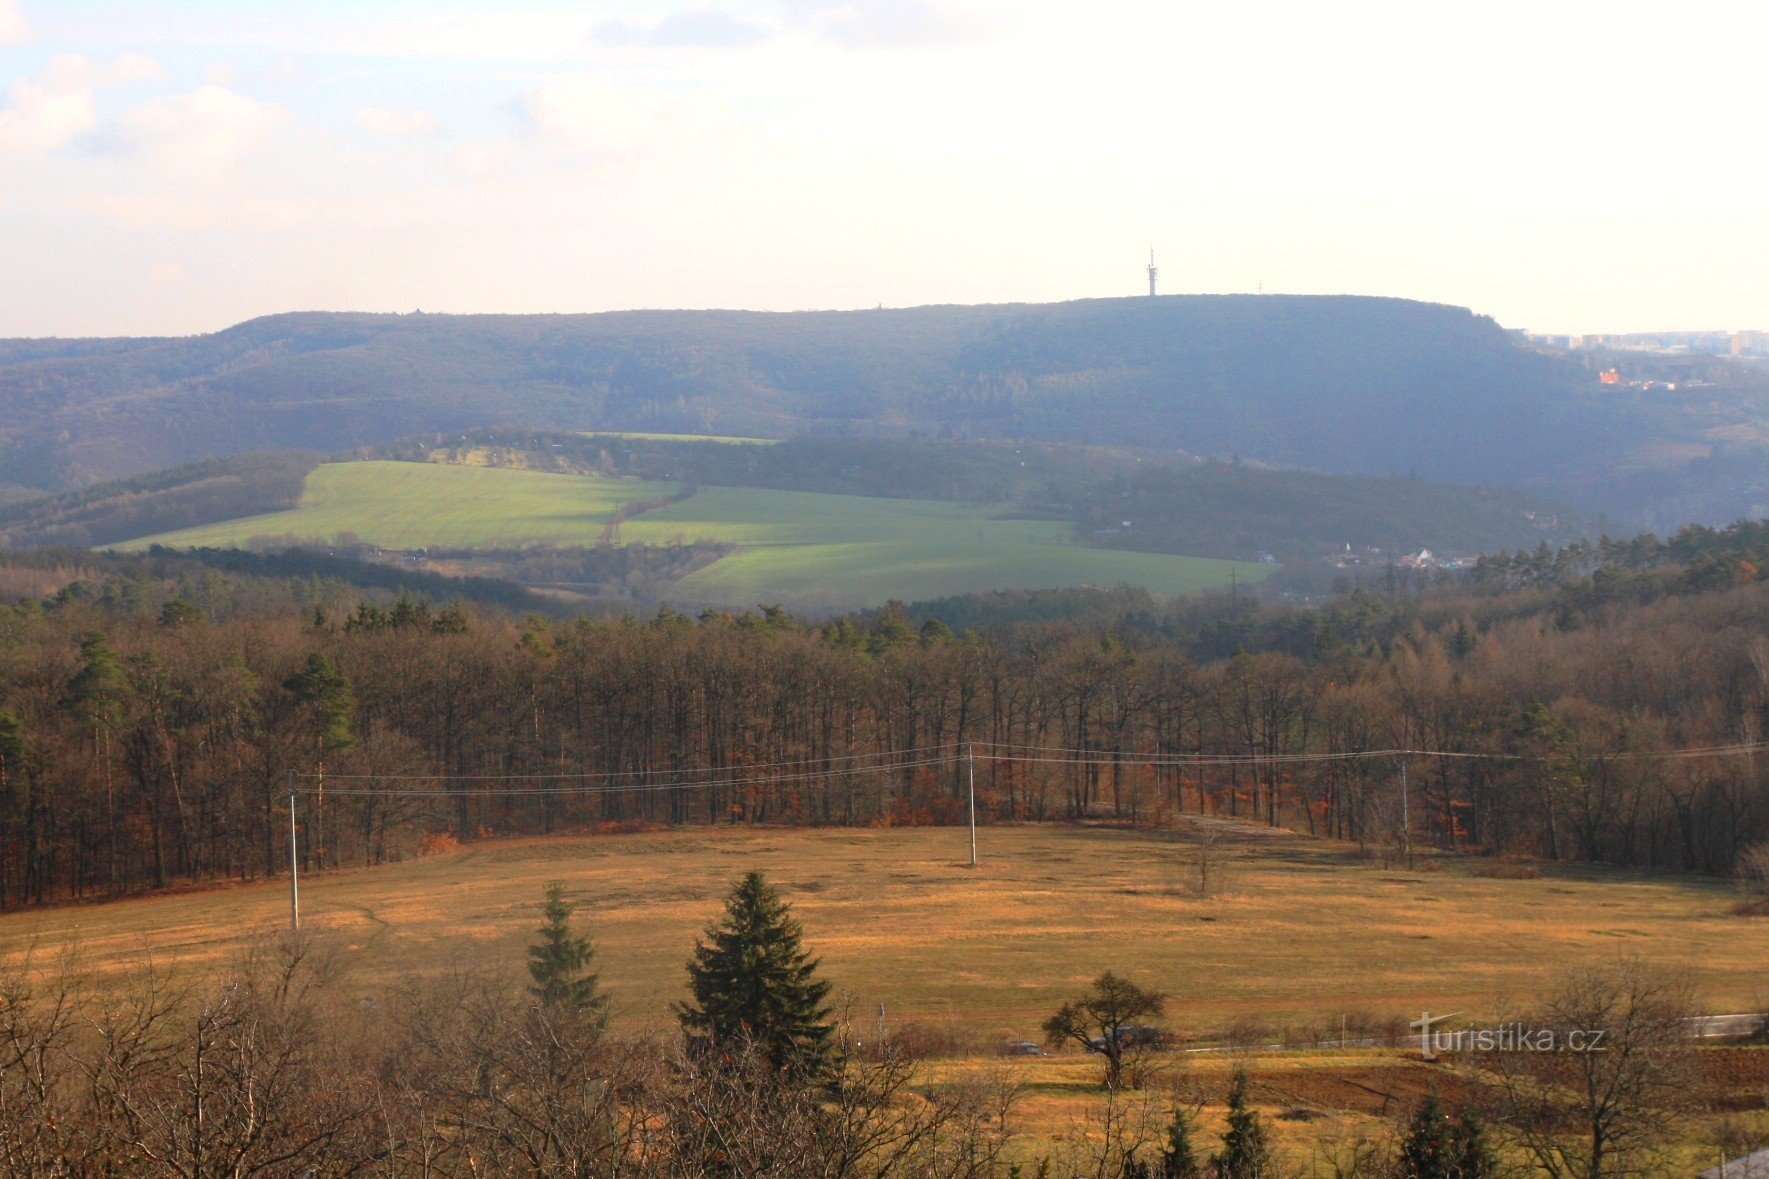 Hády karst plateau fra den øvre del af Bílovice nad Svitavou